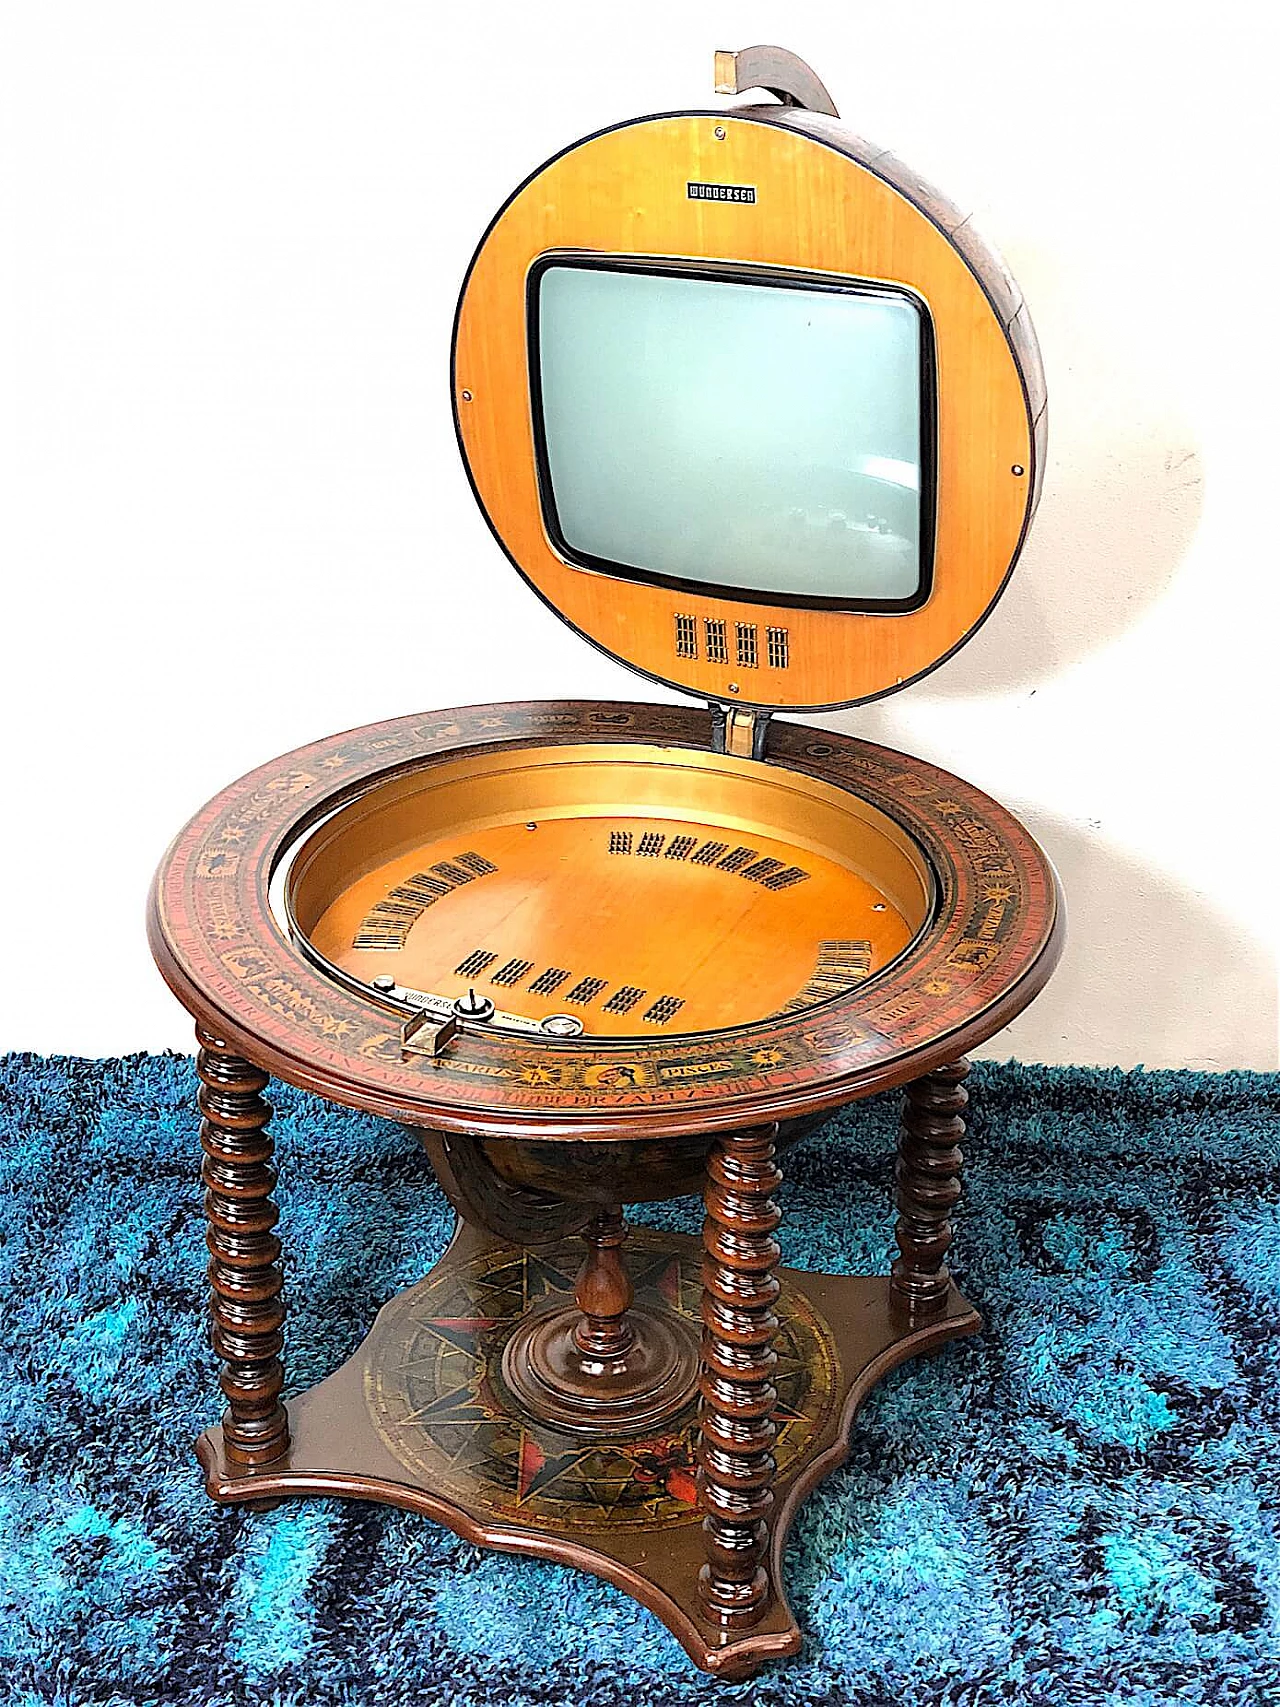 Wundersen globe-shaped television set, 1967 1367108